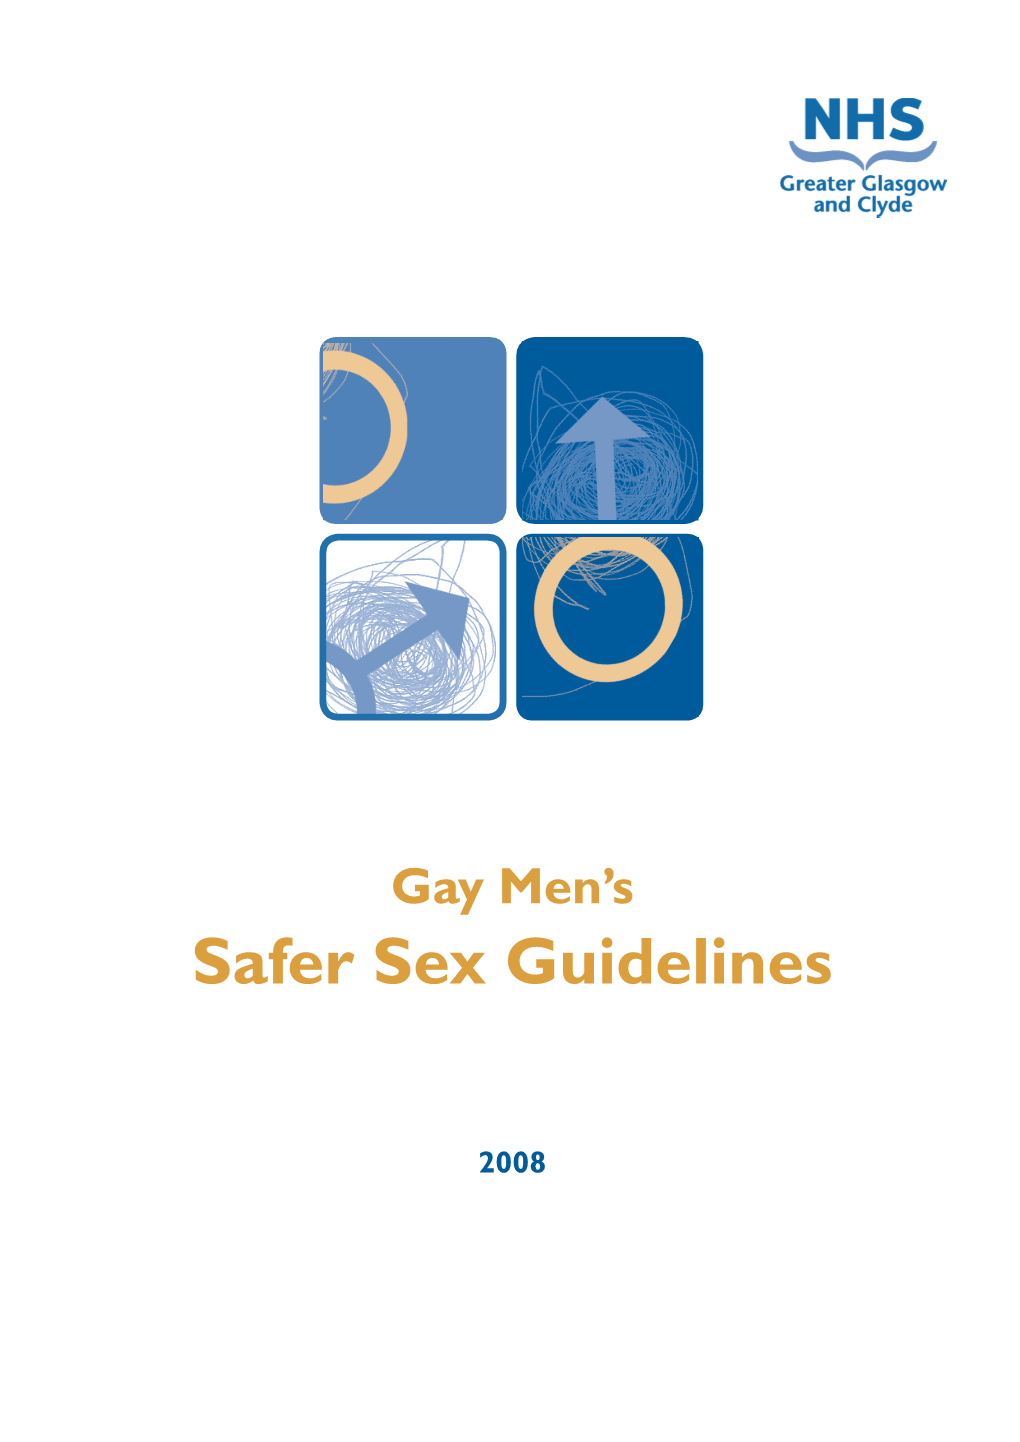 Safer Sex Guidelines, 2008